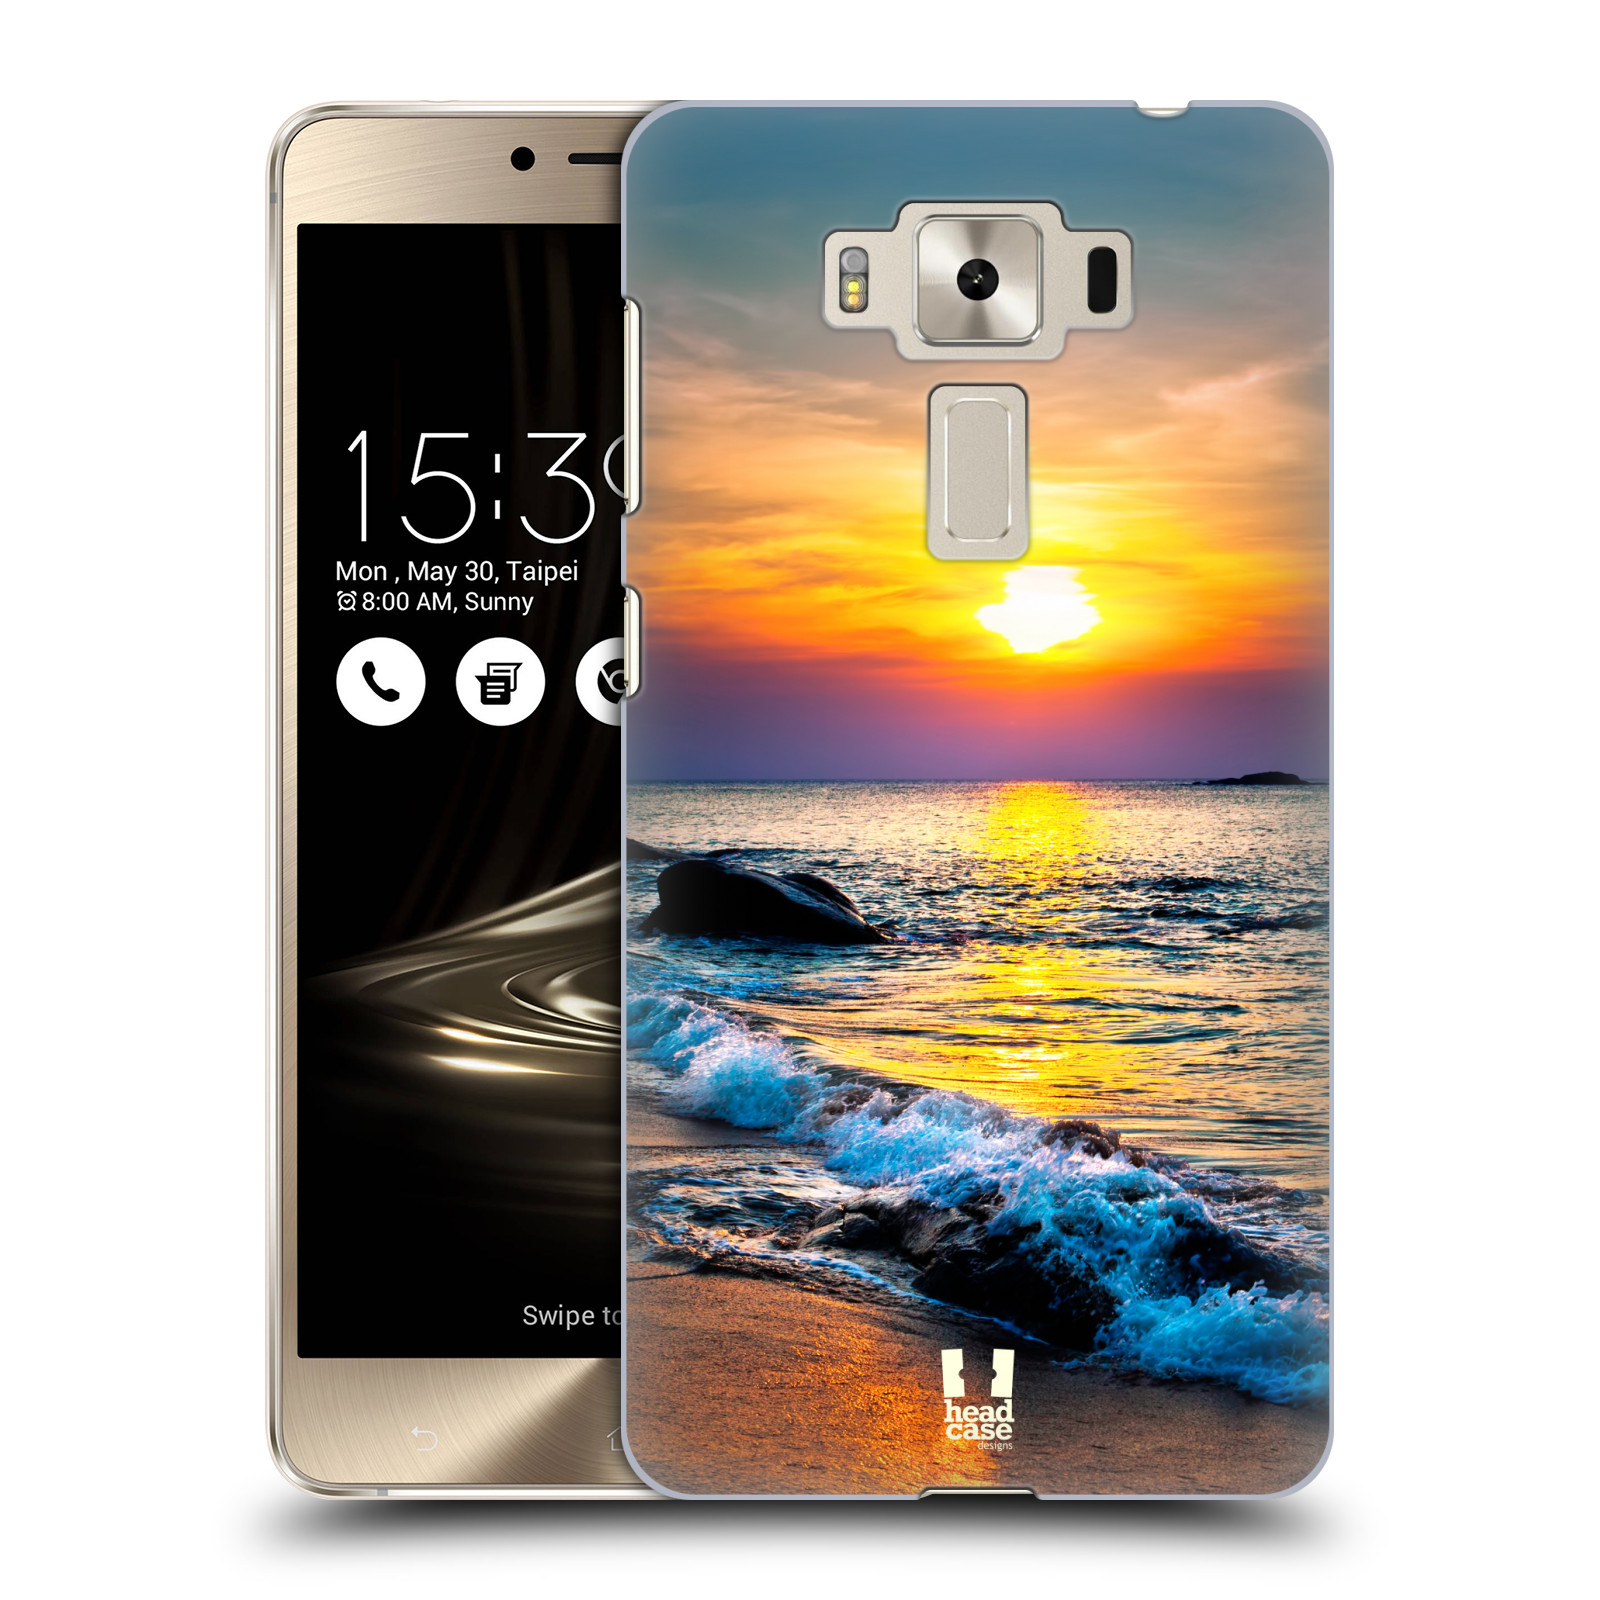 HEAD CASE plastový obal na mobil Asus Zenfone 3 DELUXE ZS550KL vzor Pláže a Moře barevný západ slunce